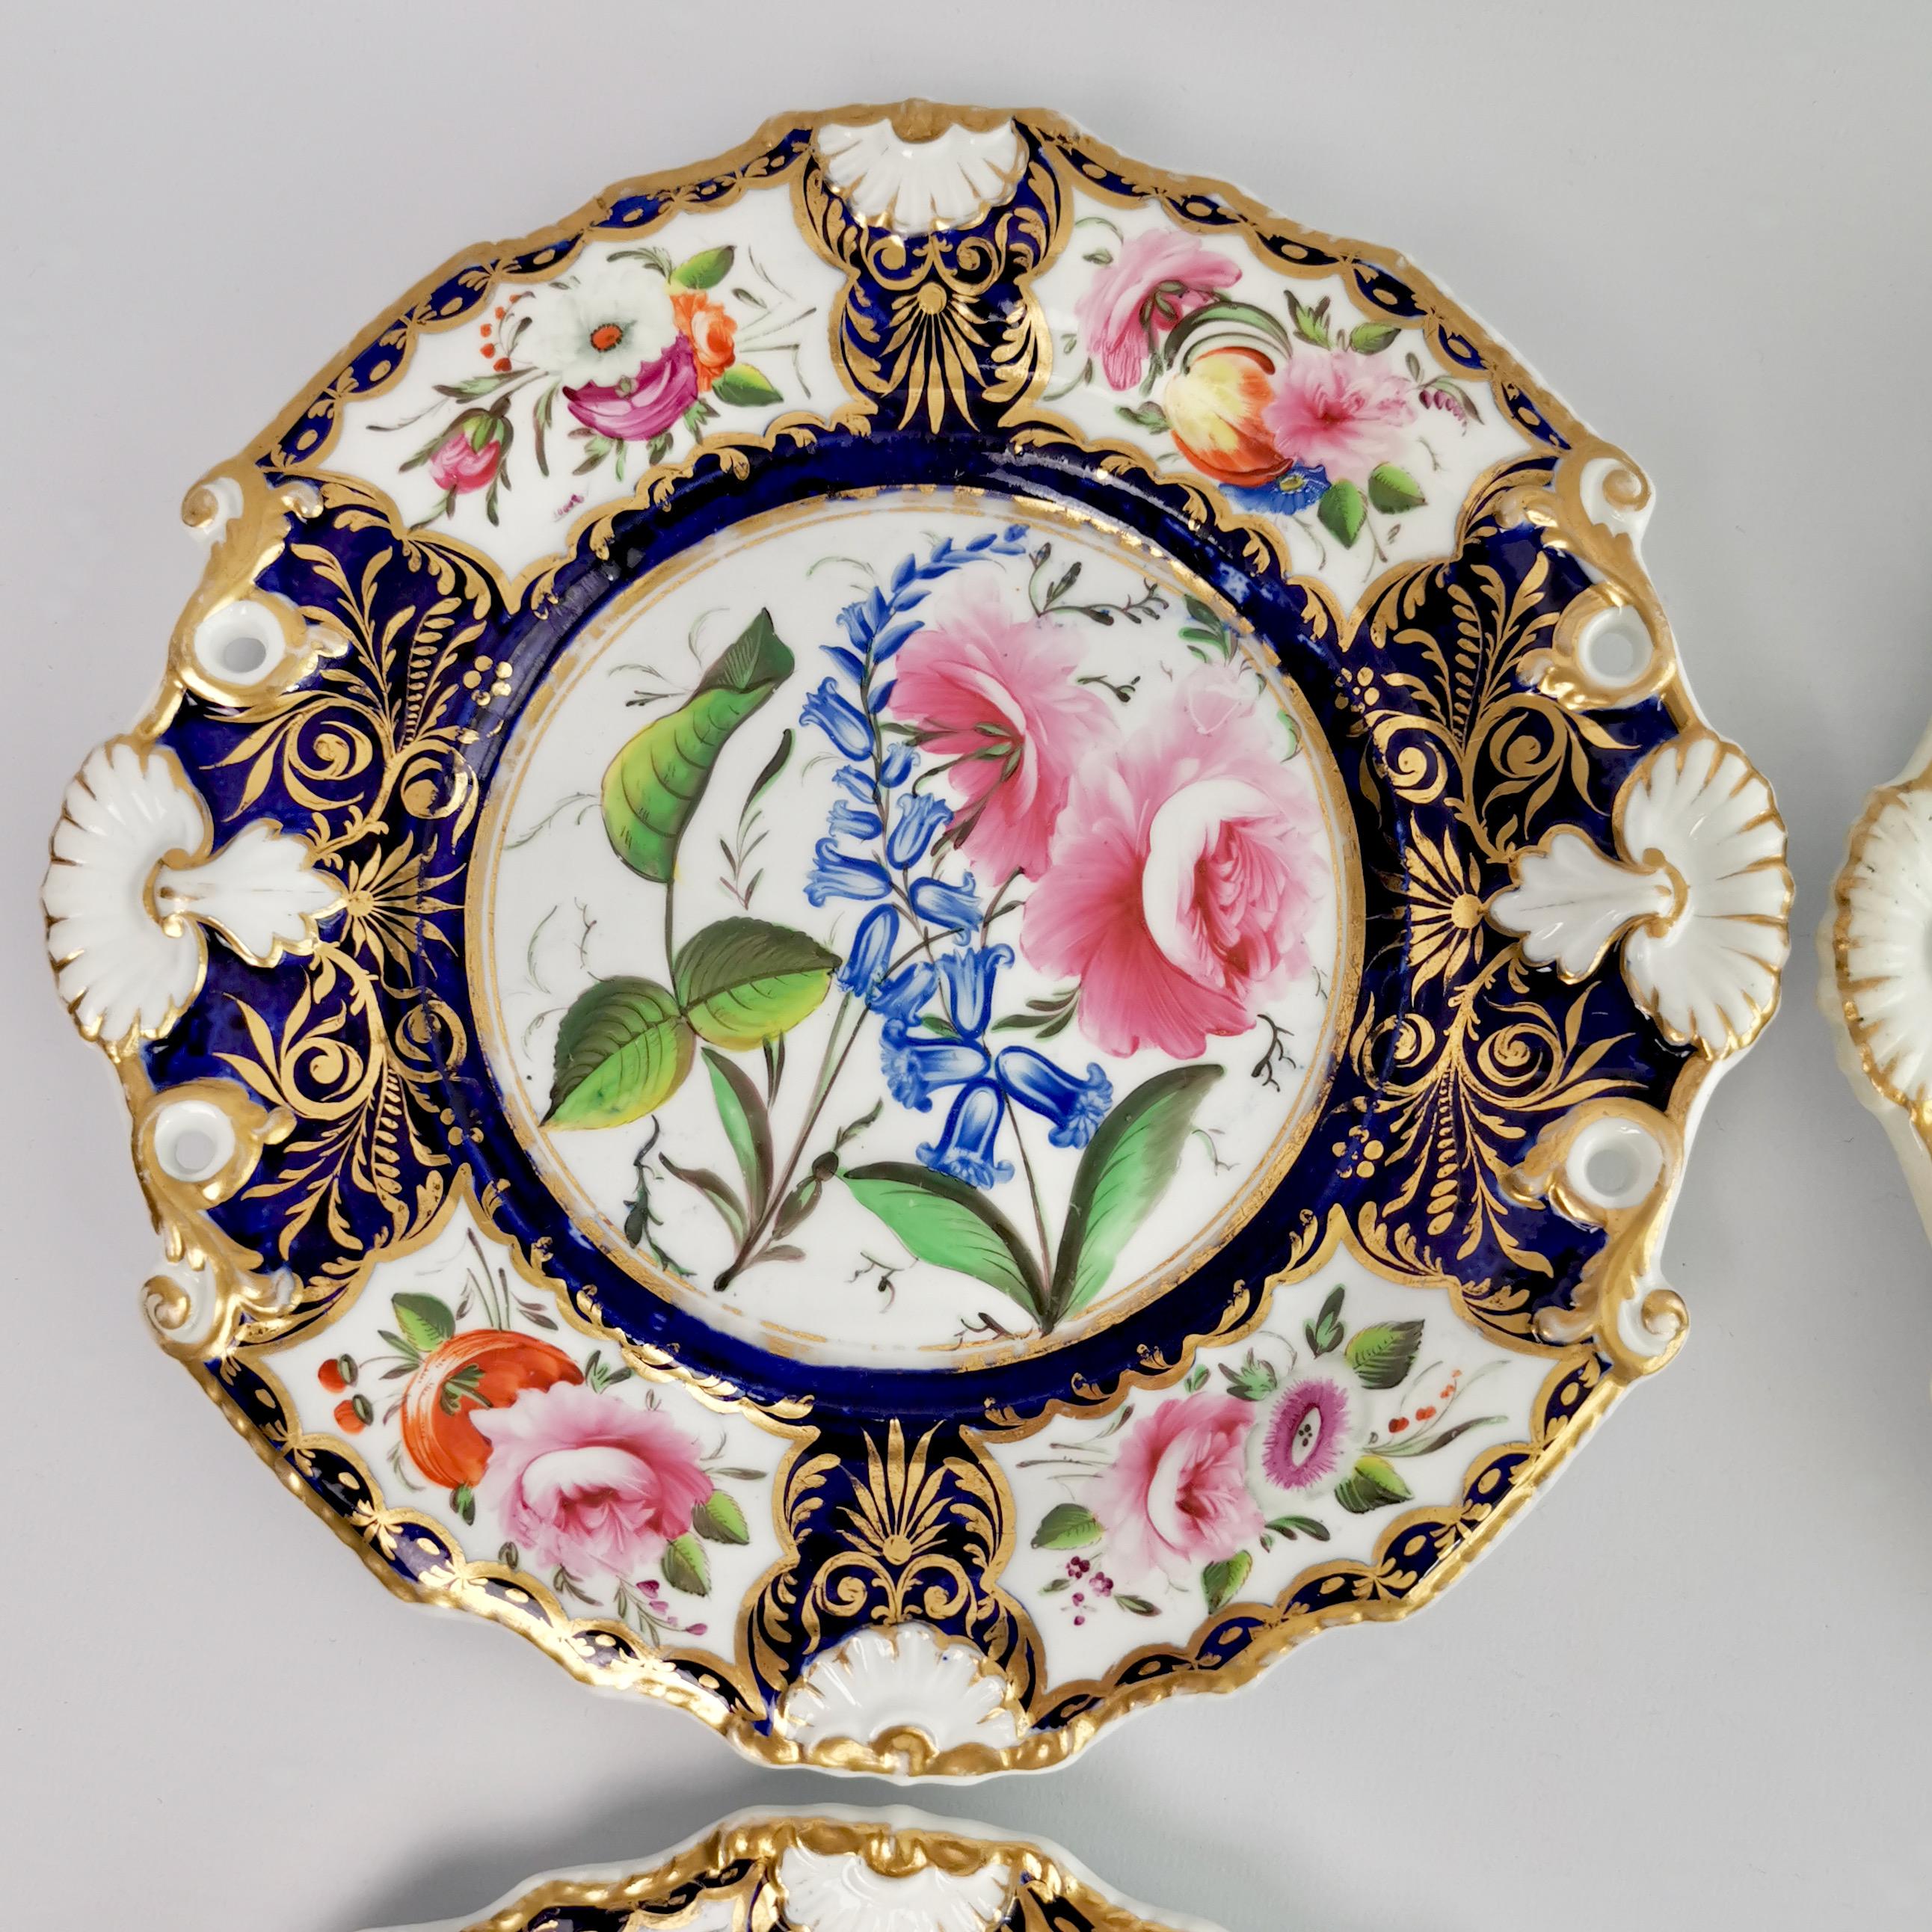 New Hall Porcelain Dessert Service, Cobalt Blue with Flowers, Regency 1824-1830 11